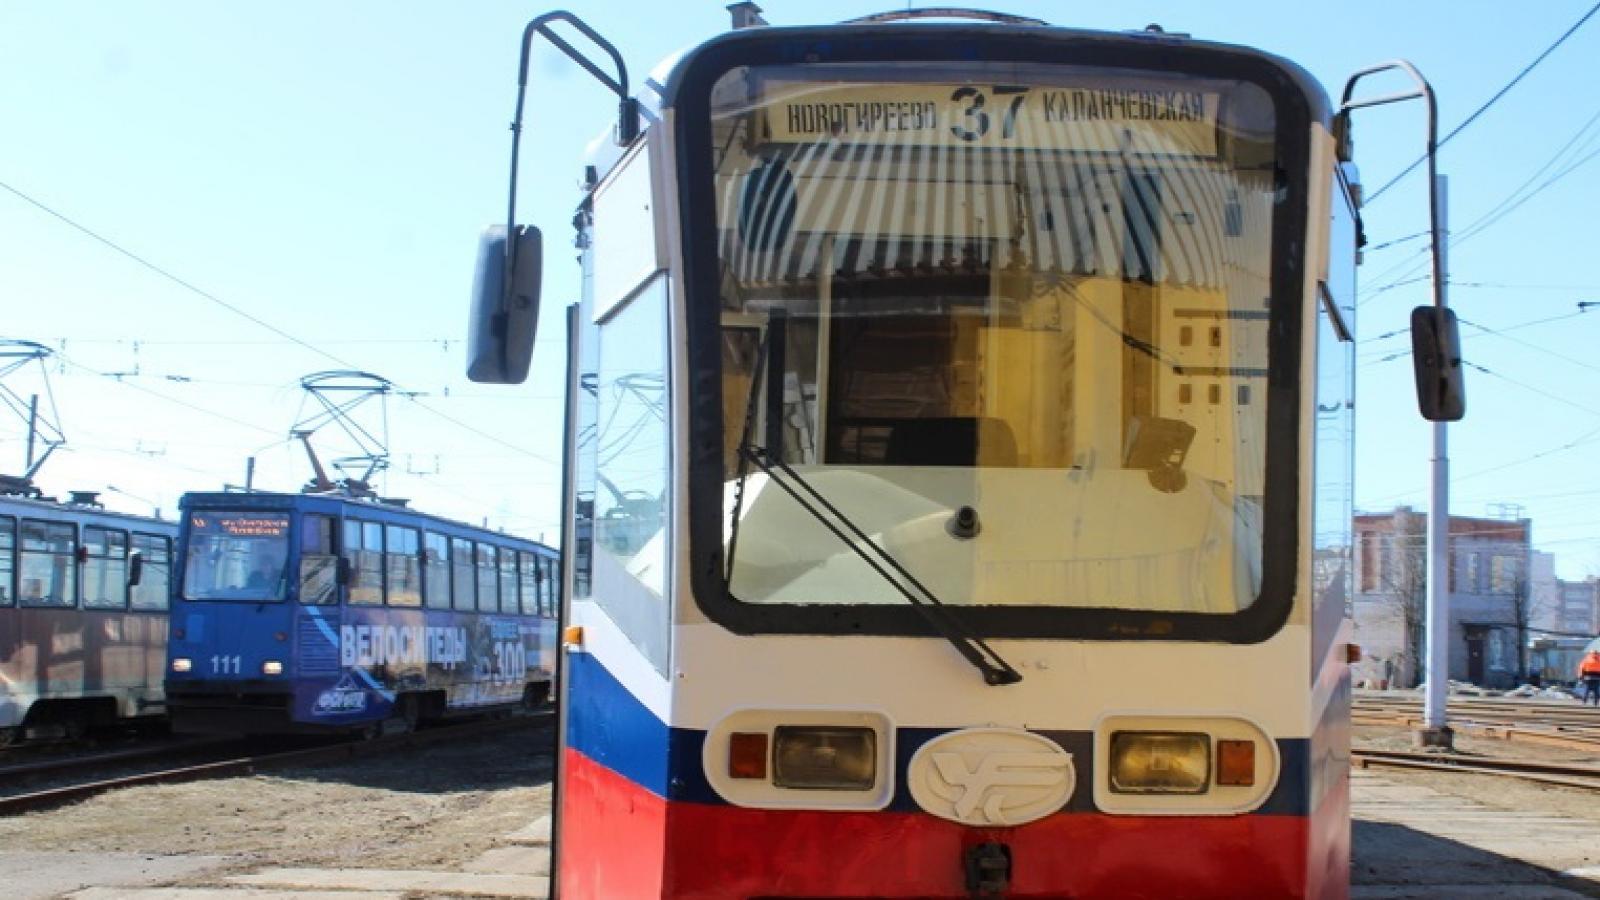 Срок выхода московских трамваев на улицы Череповца назван